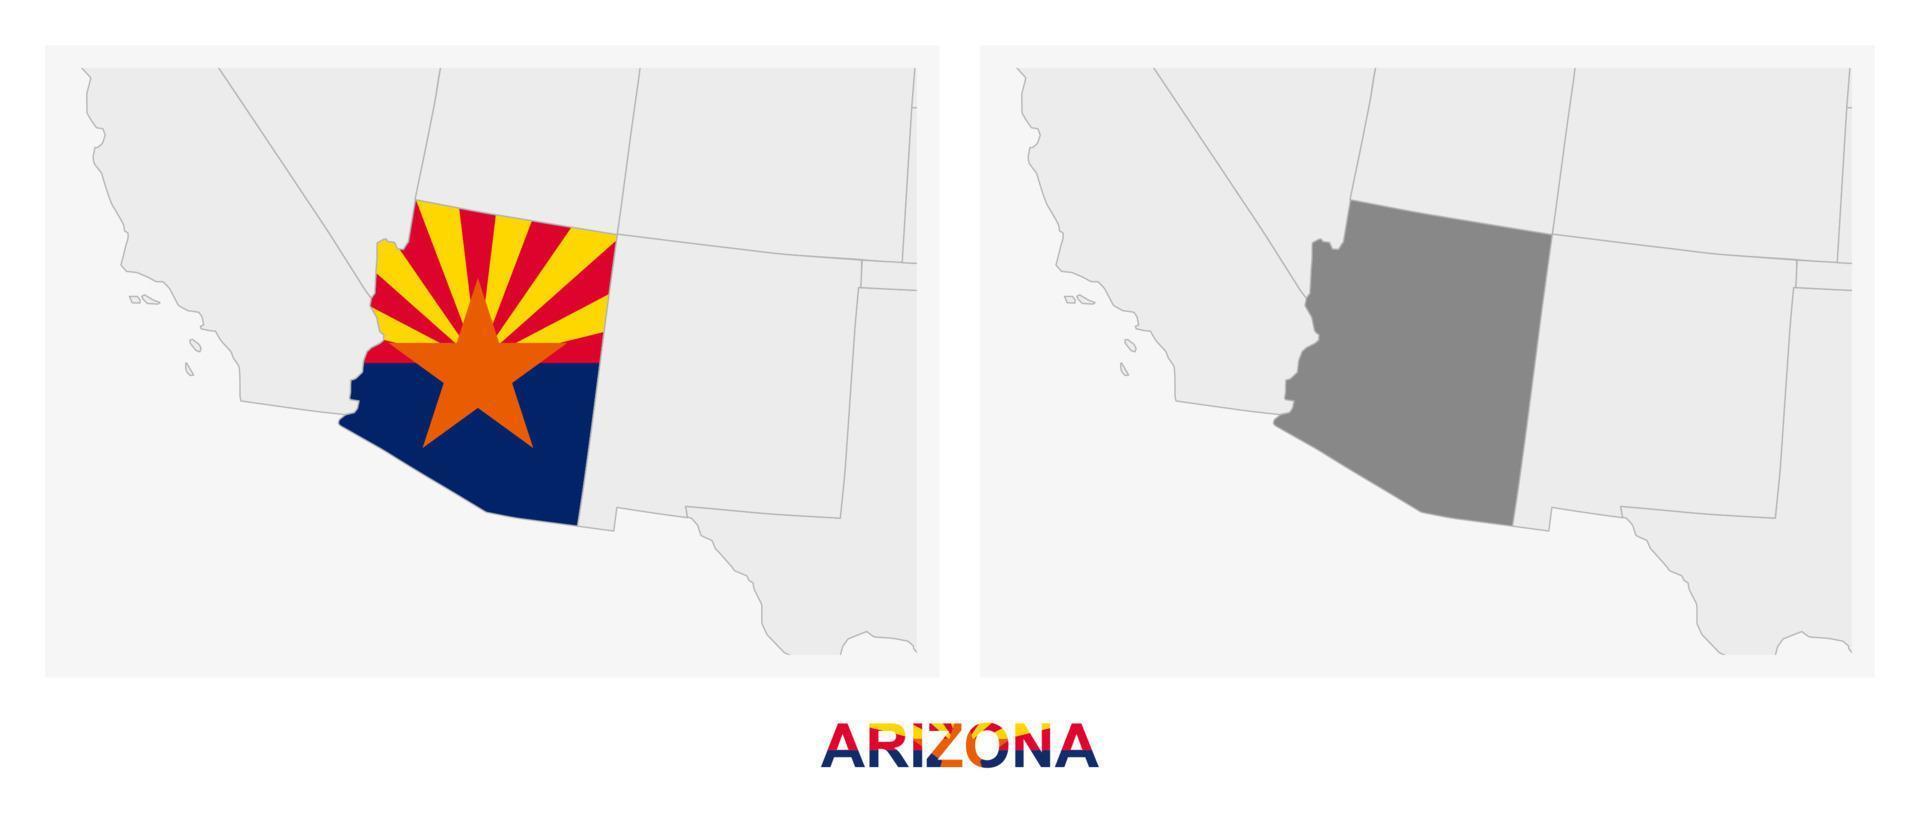 twee versies van de kaart van ons staat Arizona, met de vlag van Arizona en gemarkeerd in donker grijs. vector